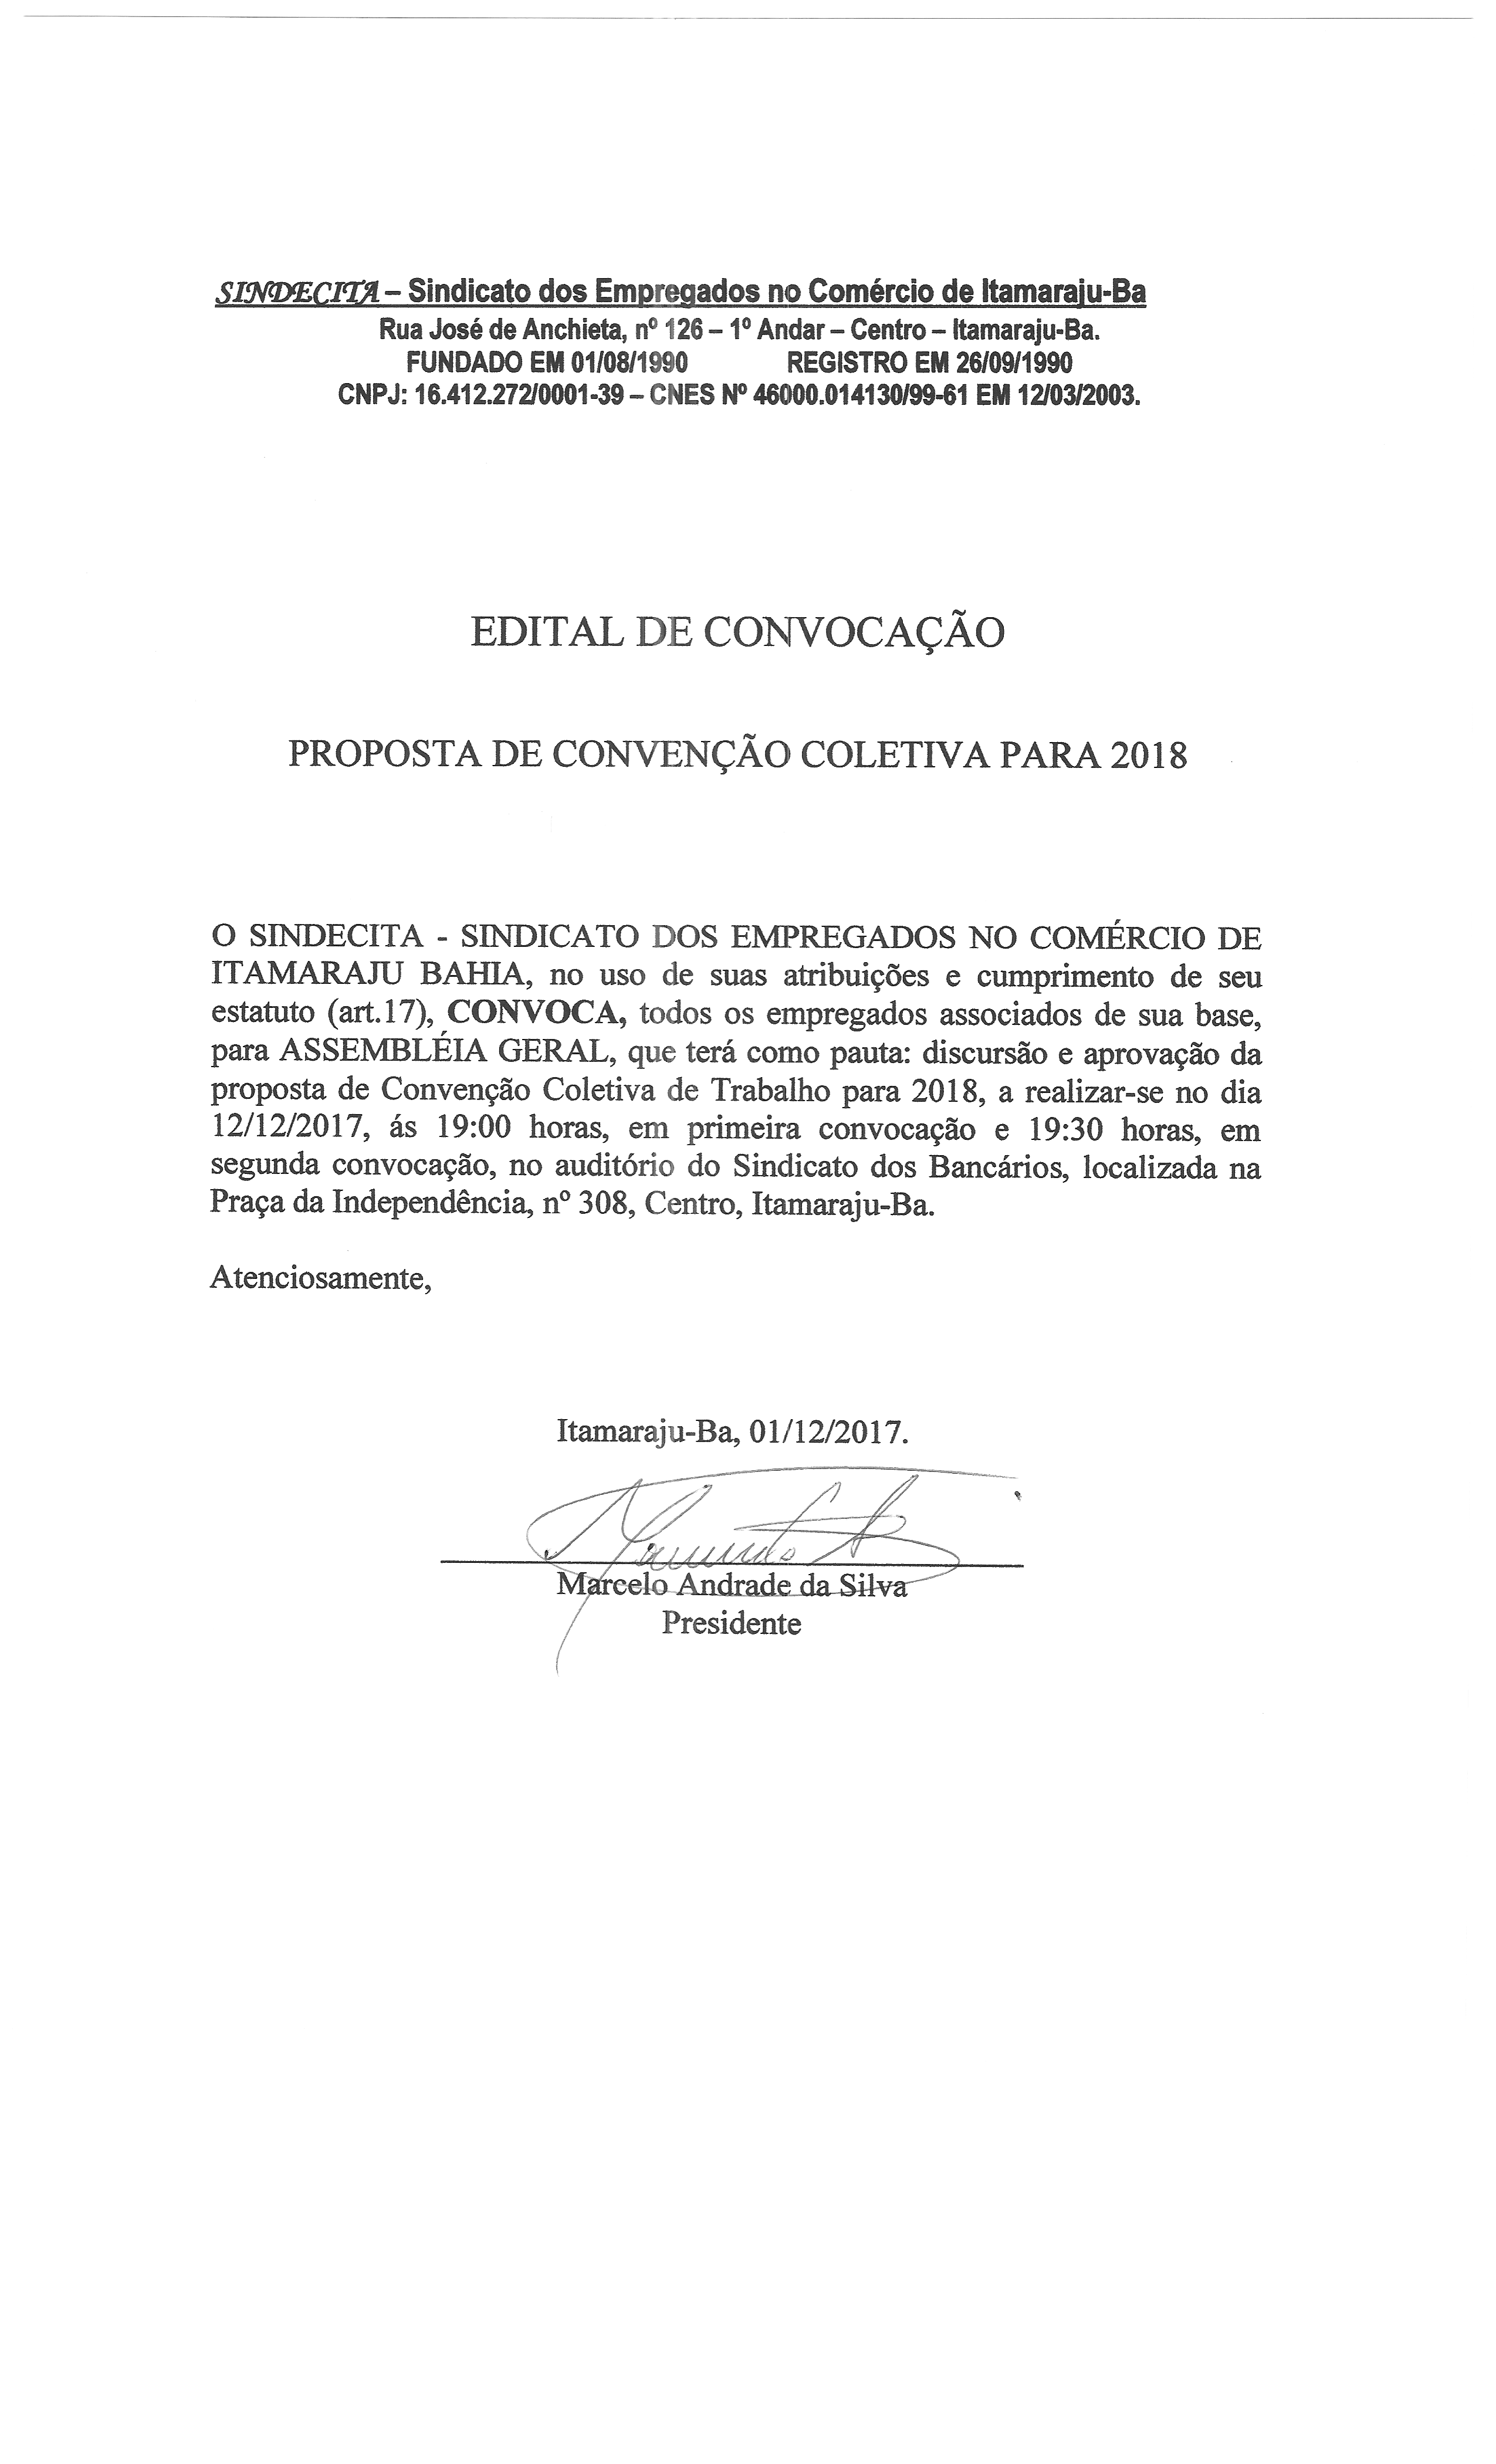 Edital de convocação do SINDECITA para assembleia geral em Itamaraju